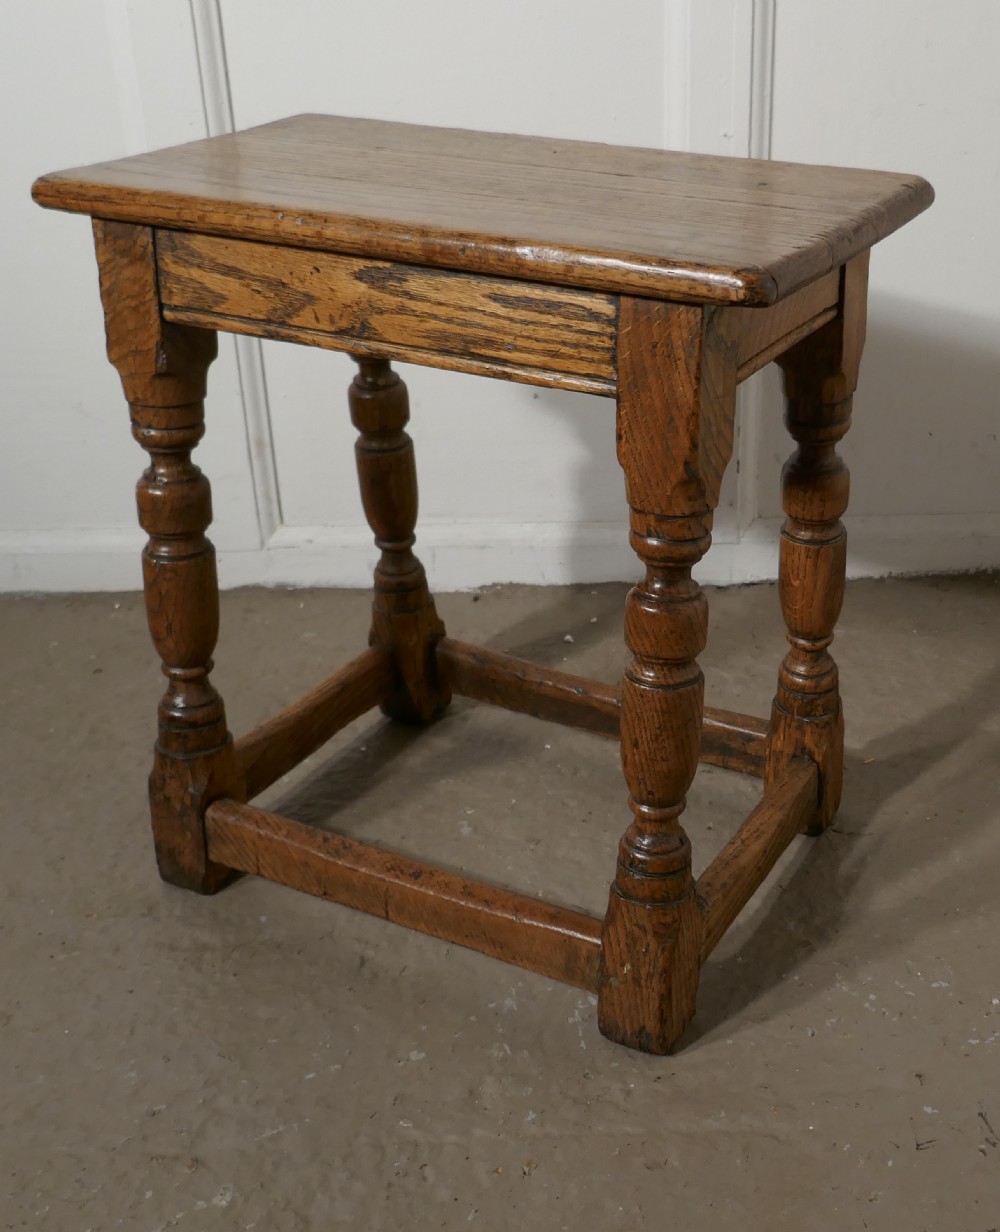 19th century golden oak joint stool